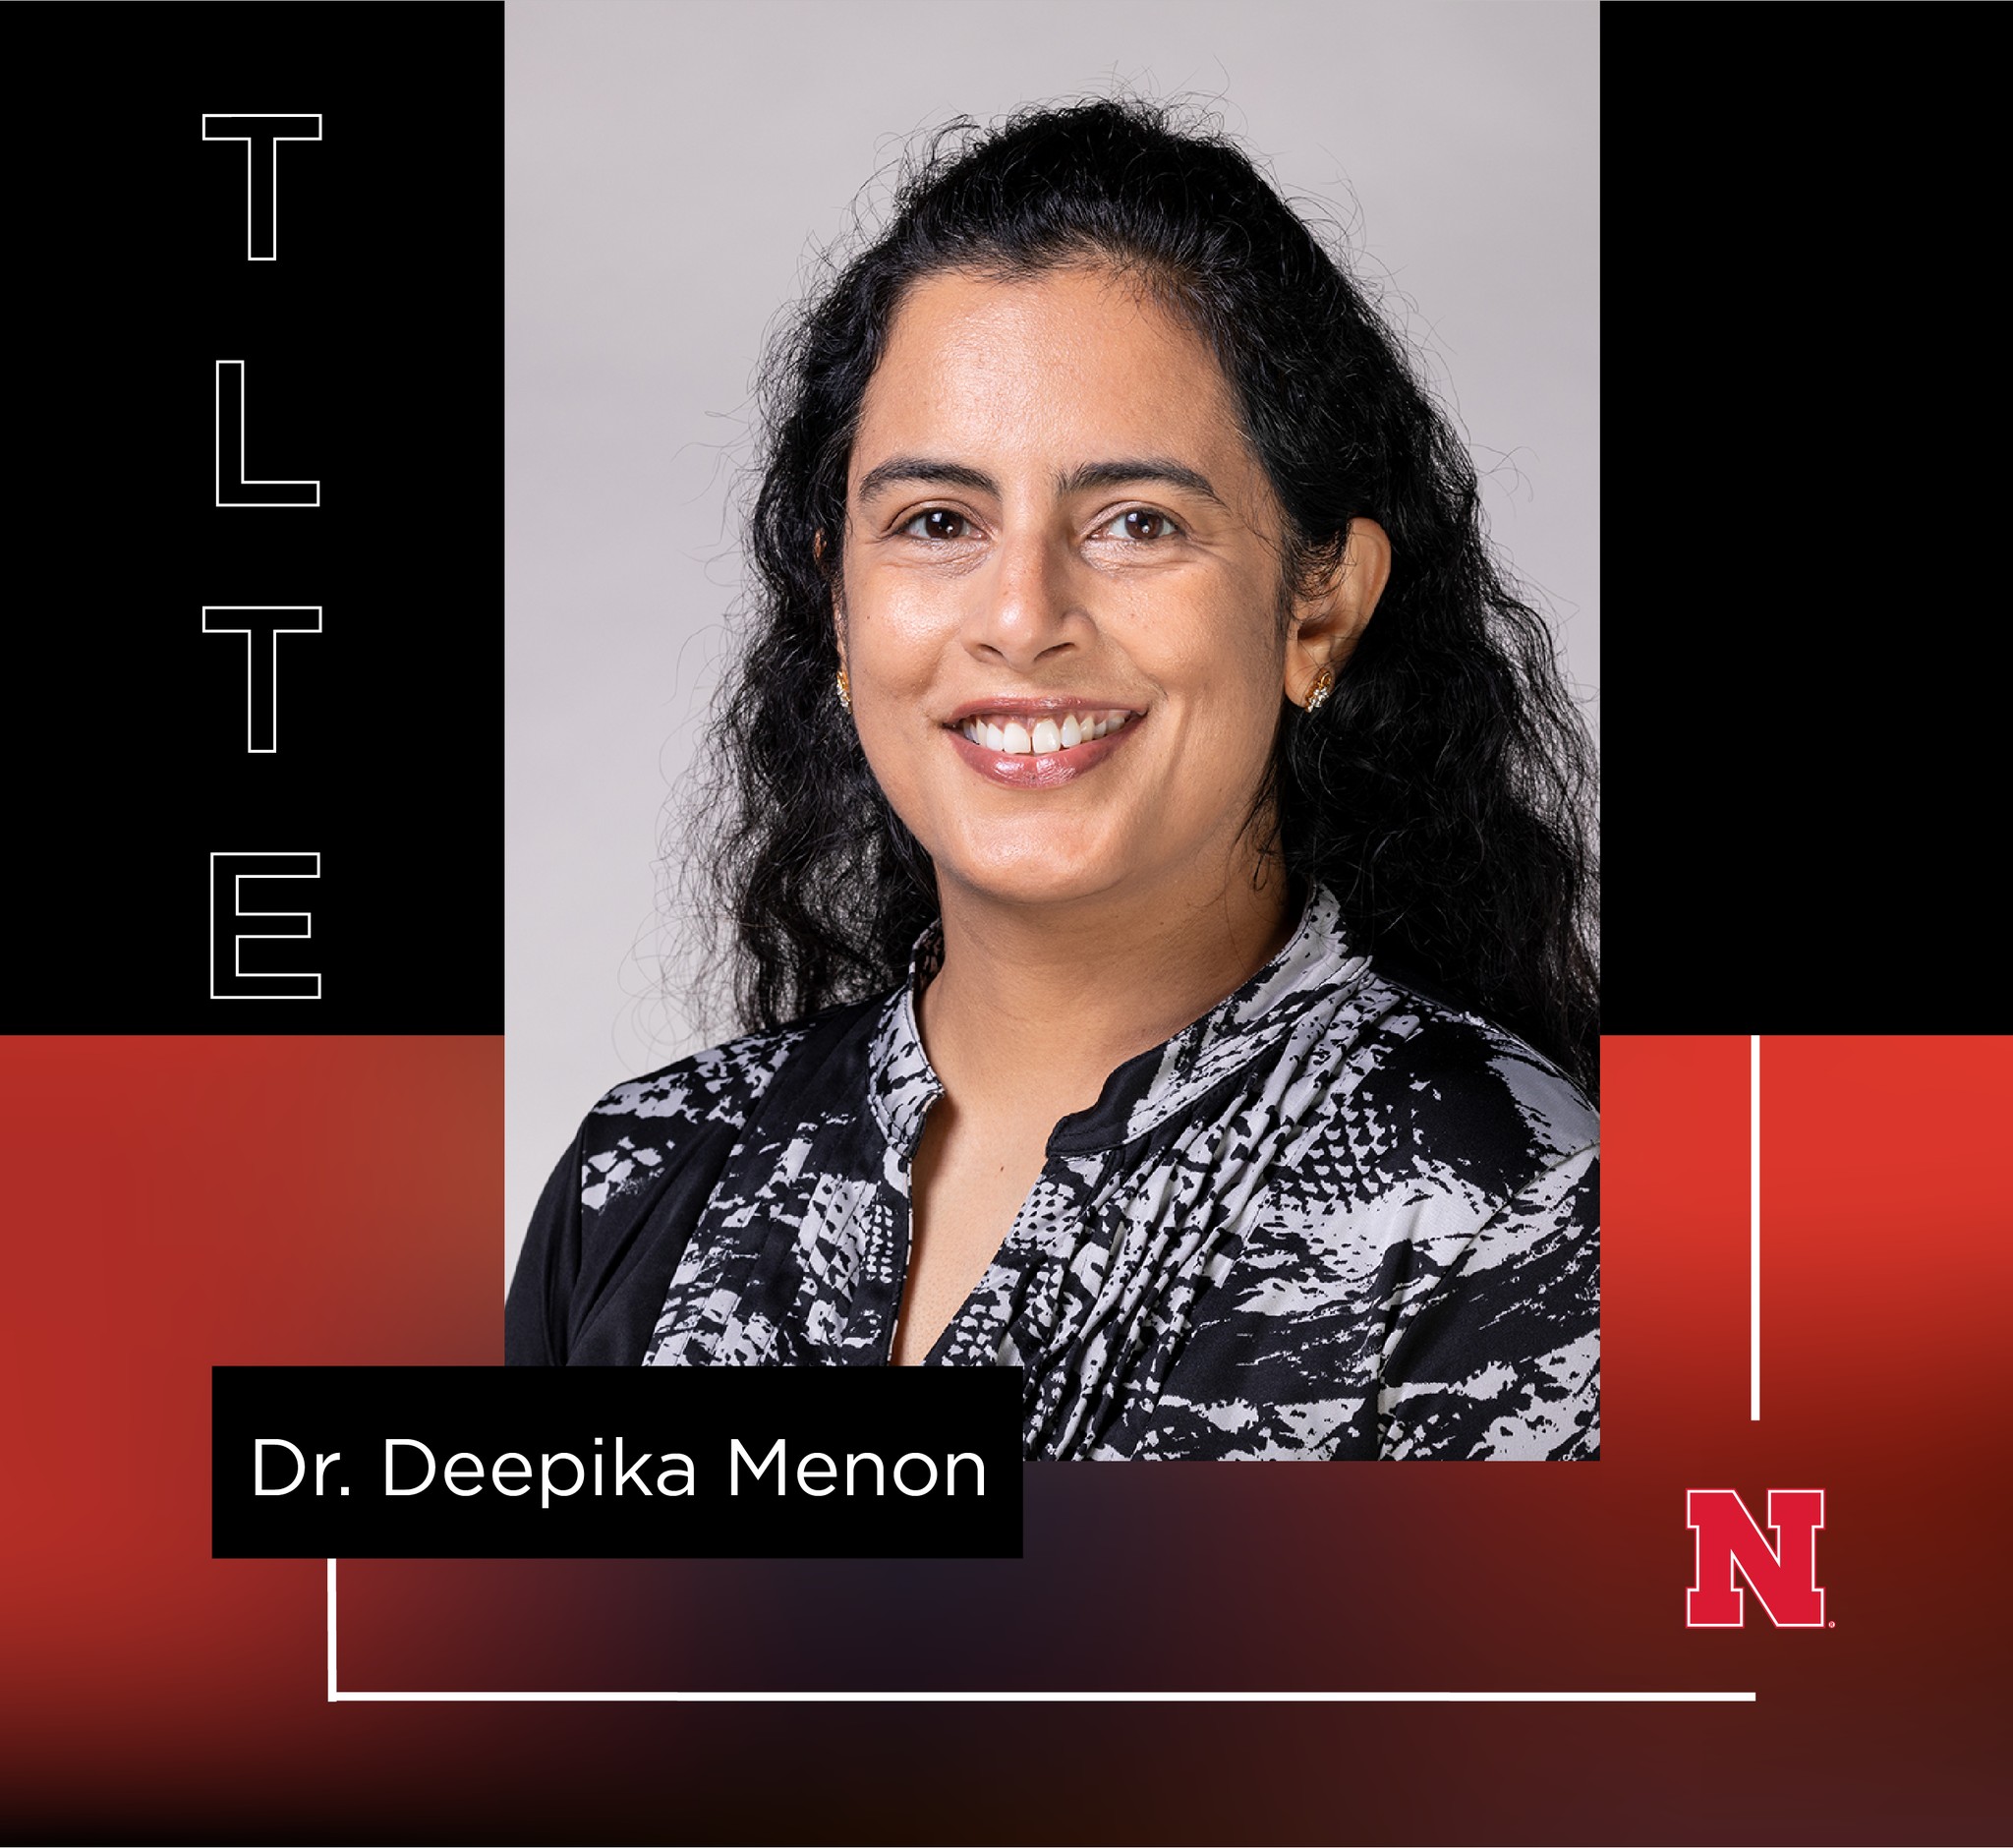 Deepika Menon, assistant professor, UNL